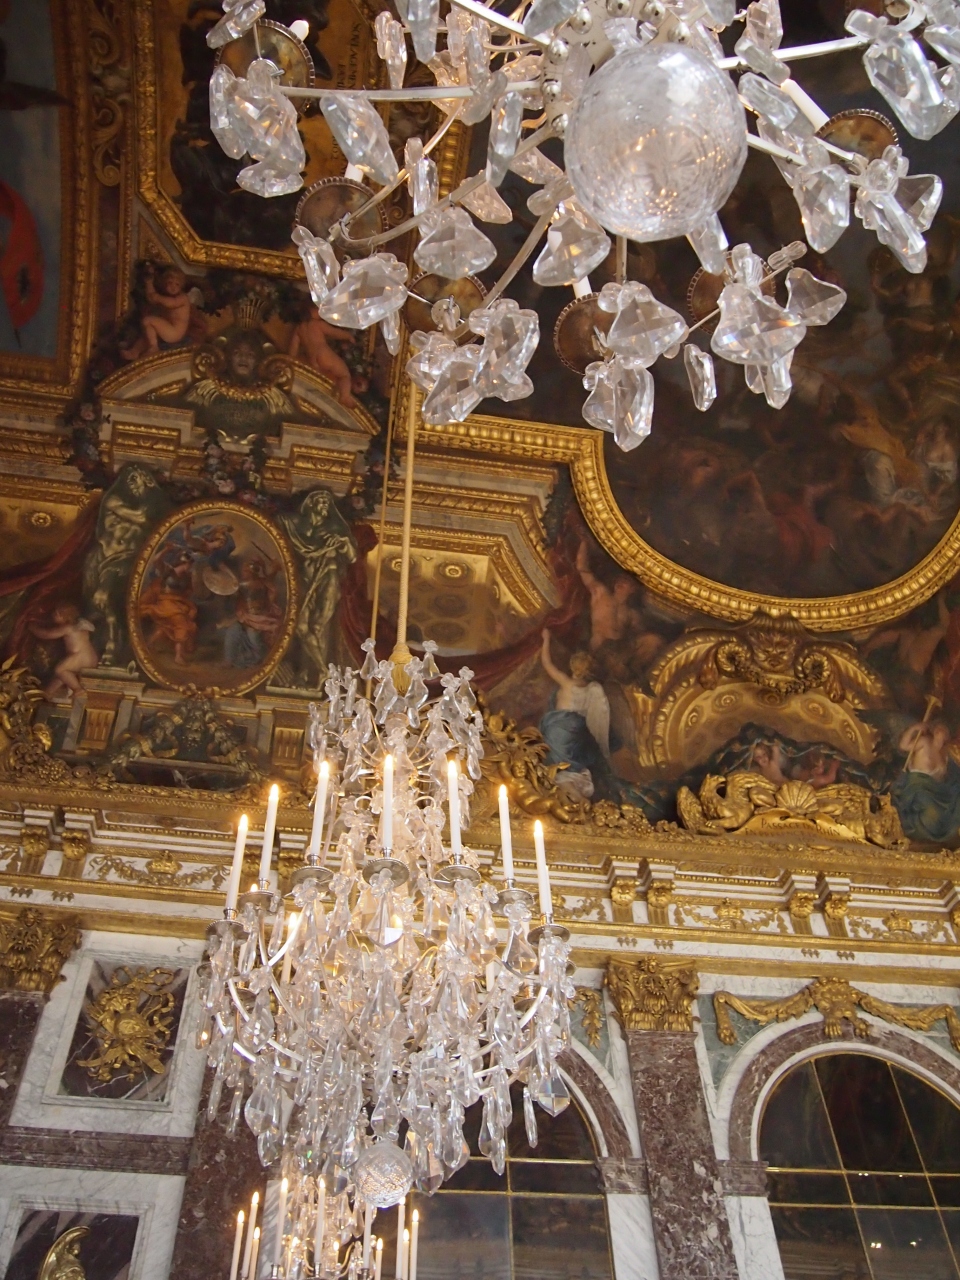 ふらっと一人でパリ旅行 二日目前編 ヴェルサイユ宮殿 マルシェ散策 パリ フランス の旅行記 ブログ By Ecoさん フォートラベル